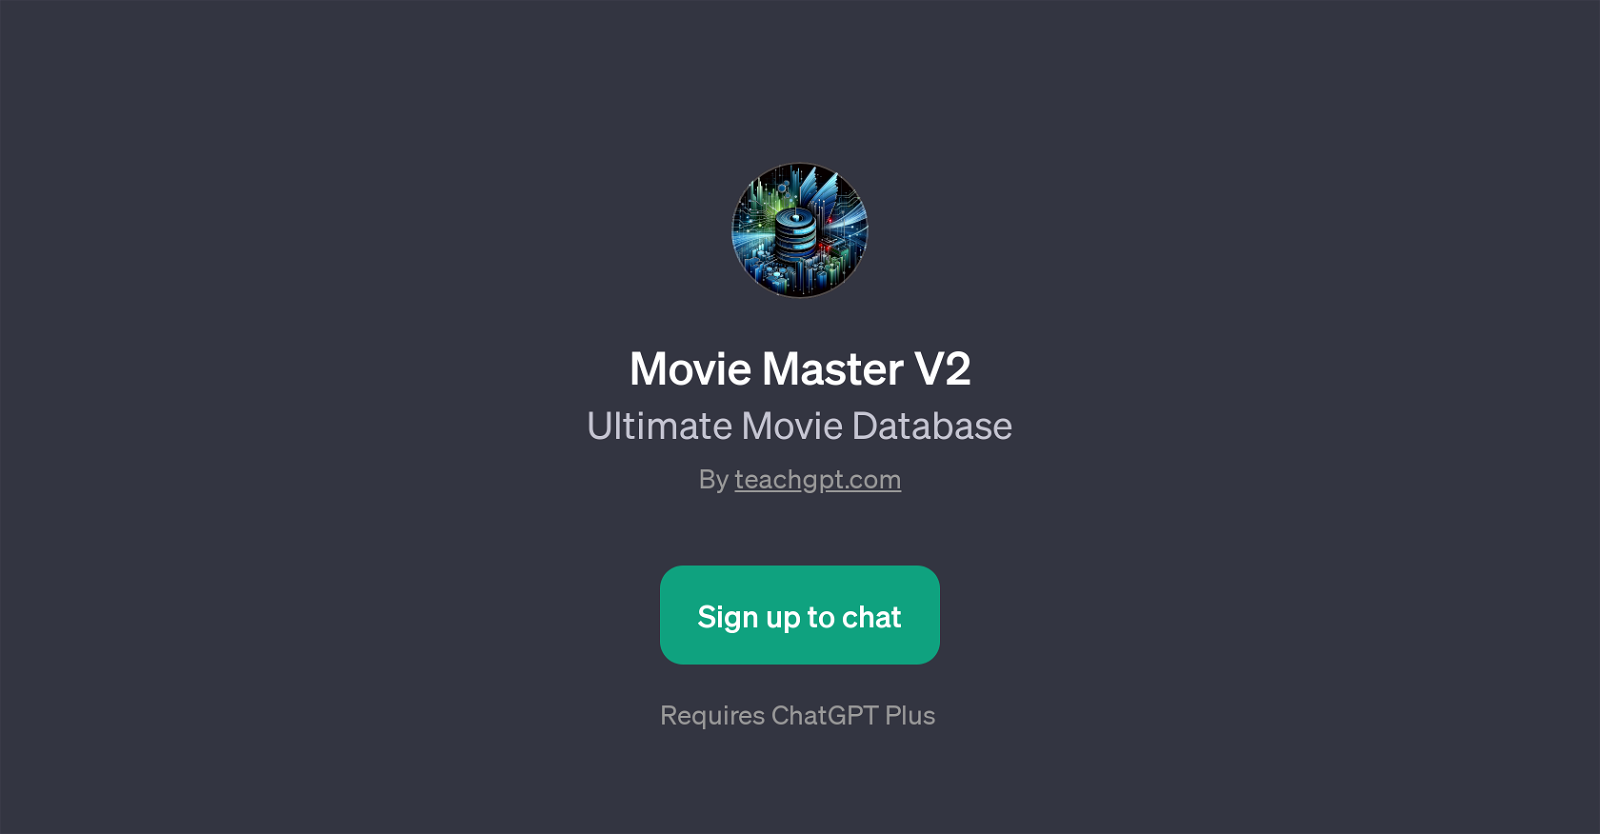 Movie Master V2 website